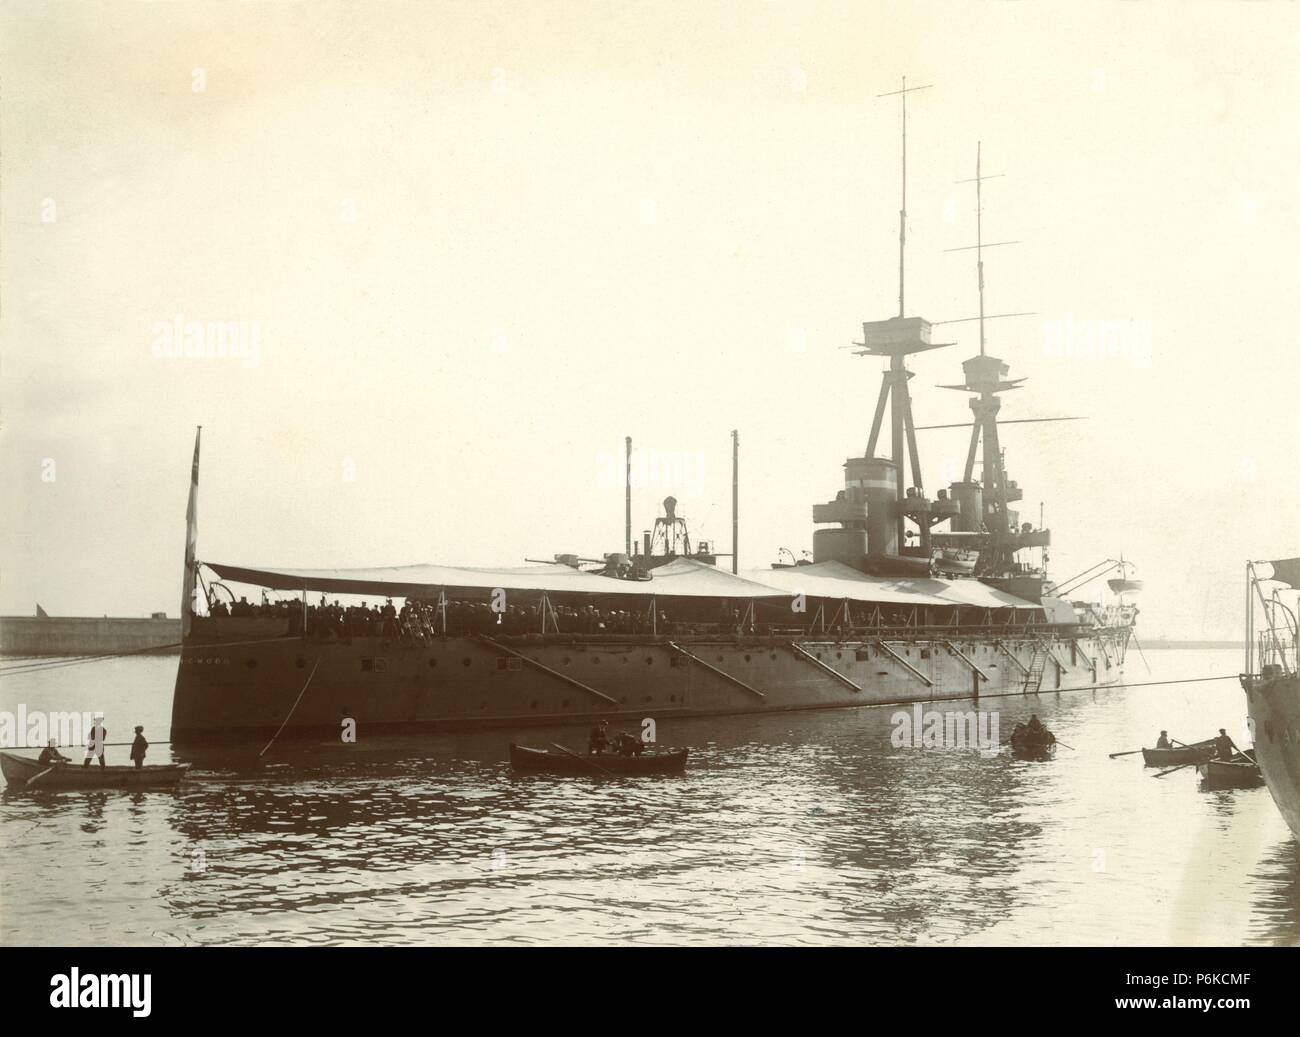 España. Tarjeta postal. Marina de guerra. Acorazado España en el puerto de Barcelona. Año 1910. Stock Photo